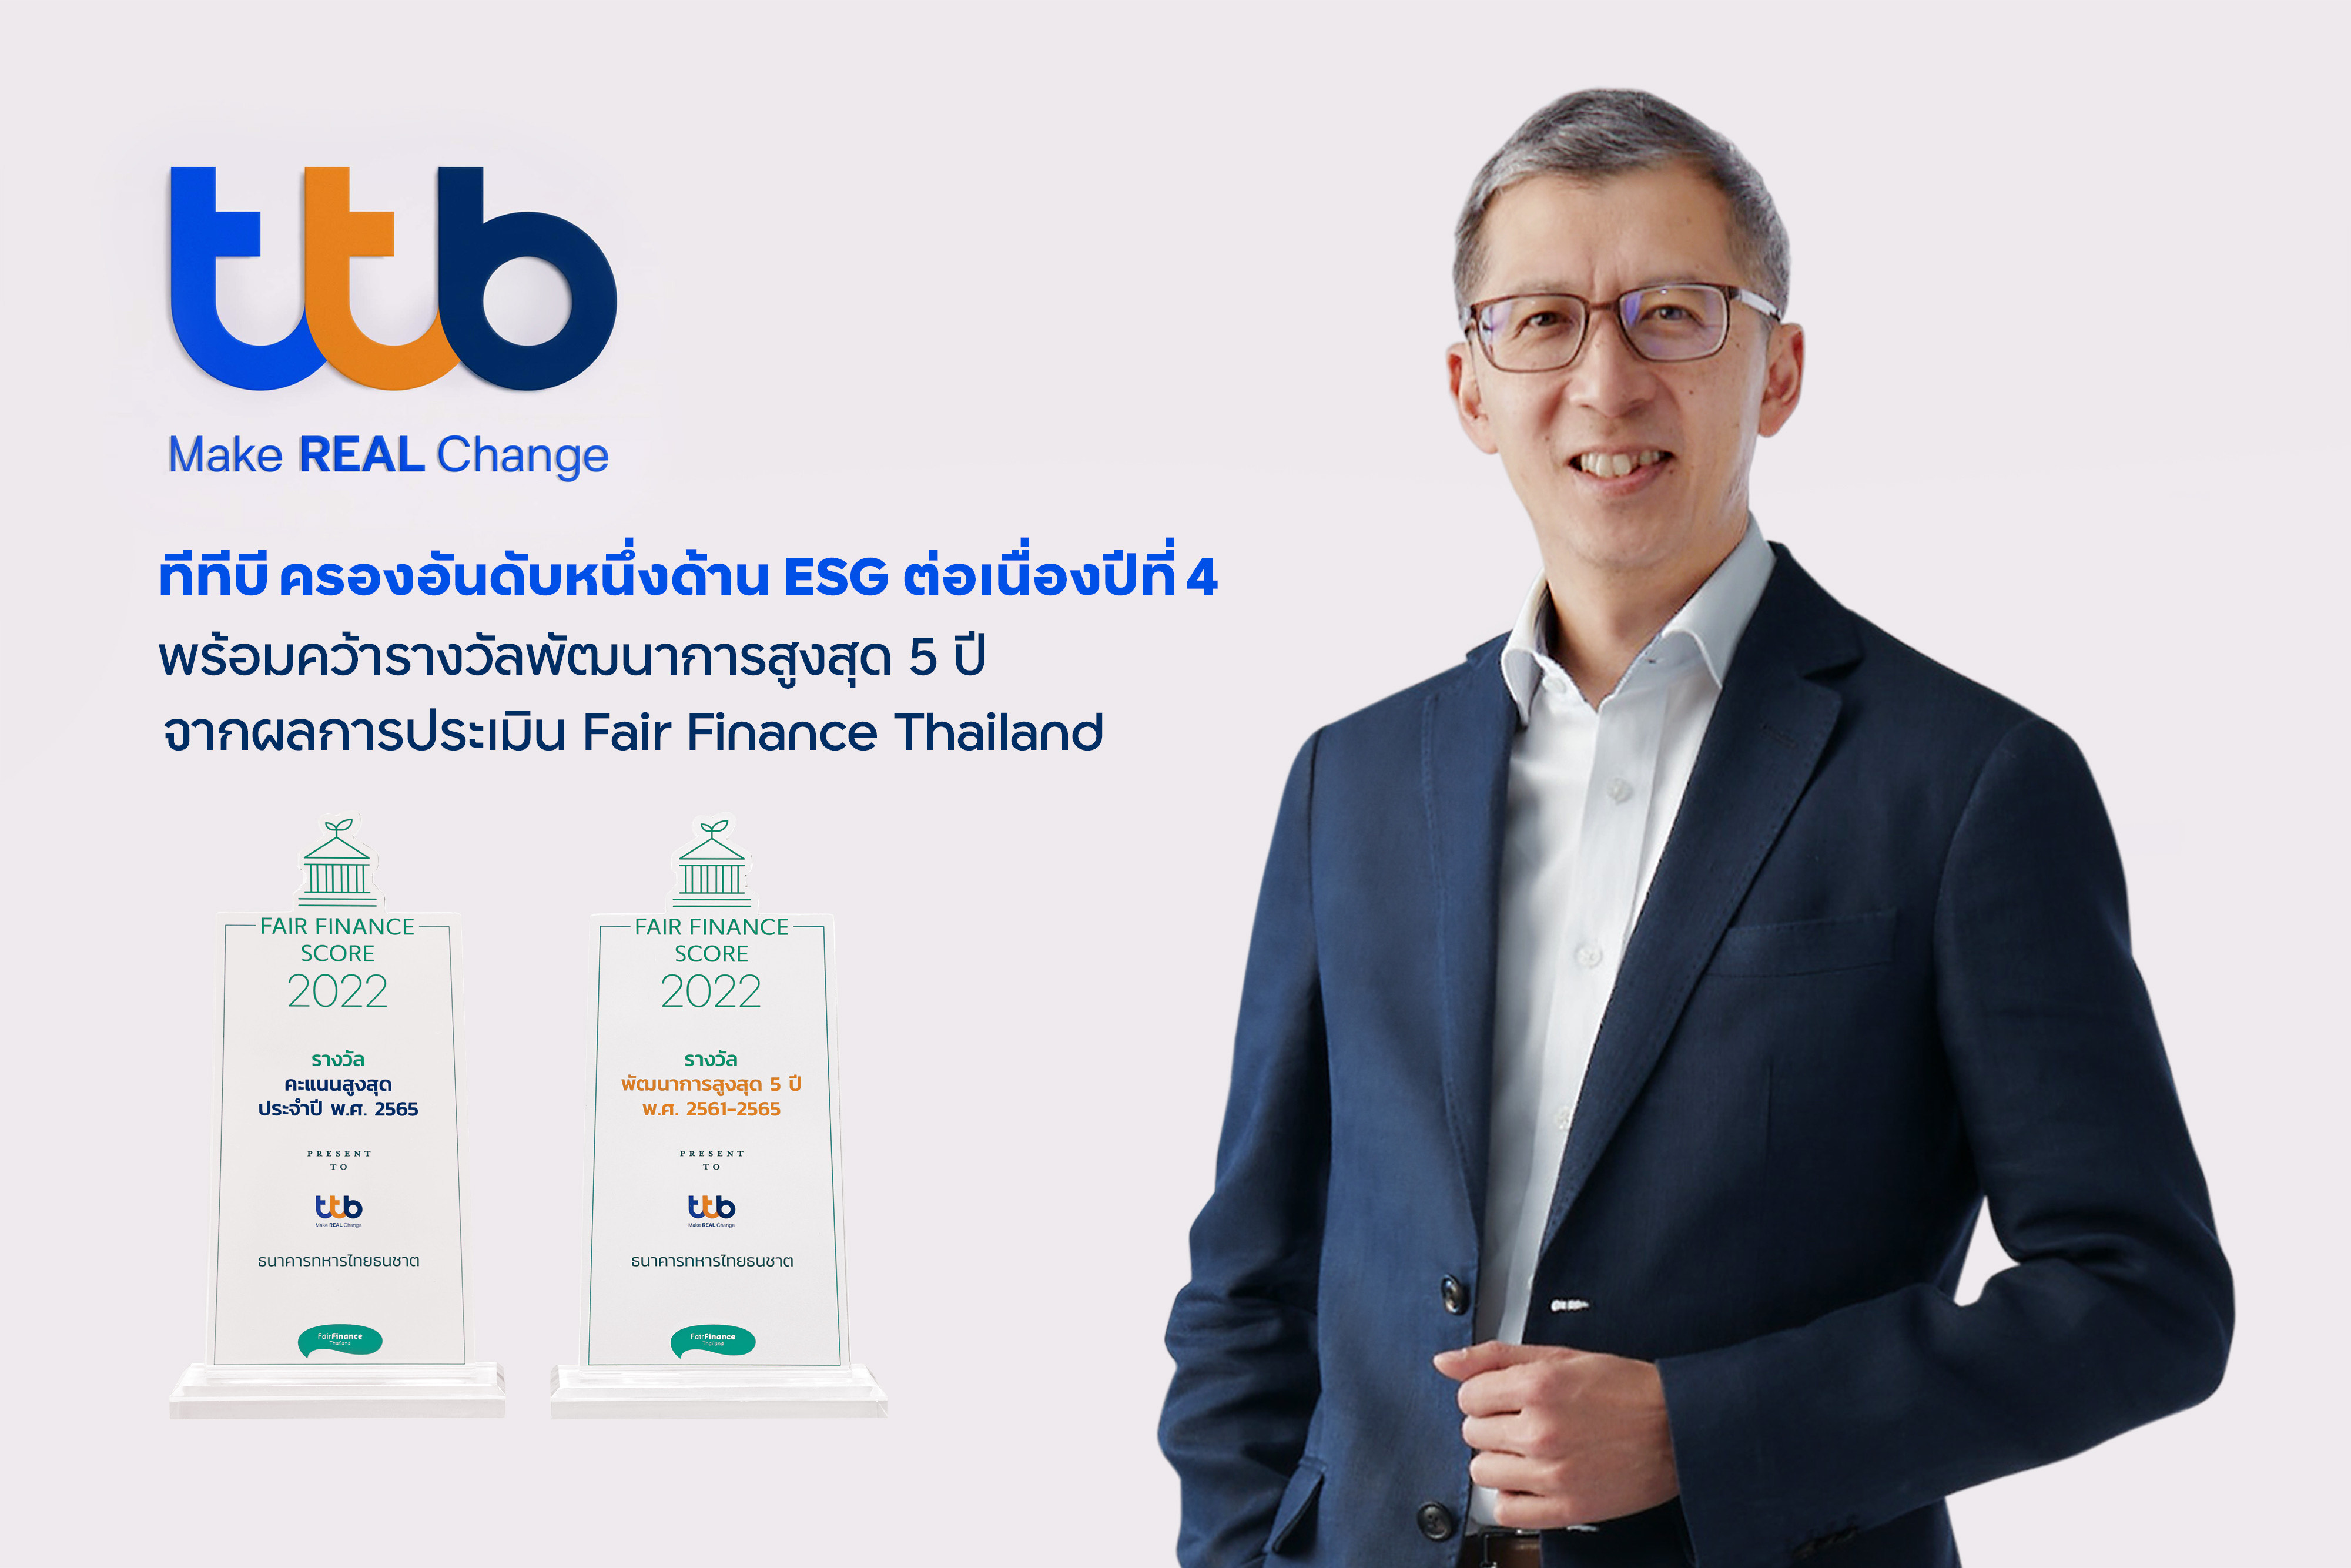 ทีเอ็มบีธนชาต มุ่งเติบโตอย่างยั่งยืนทุกมิติ เดินหน้ารับรางวัลต่อเนื่องล่าสุดครองอันดับหนึ่งธนาคารไทยด้าน ESG เป็นปีที่ 4พร้อมคว้ารางวัลพัฒนาการสูงสุด 5 ปี จากผลการประเมิน Fair Finance Thailand